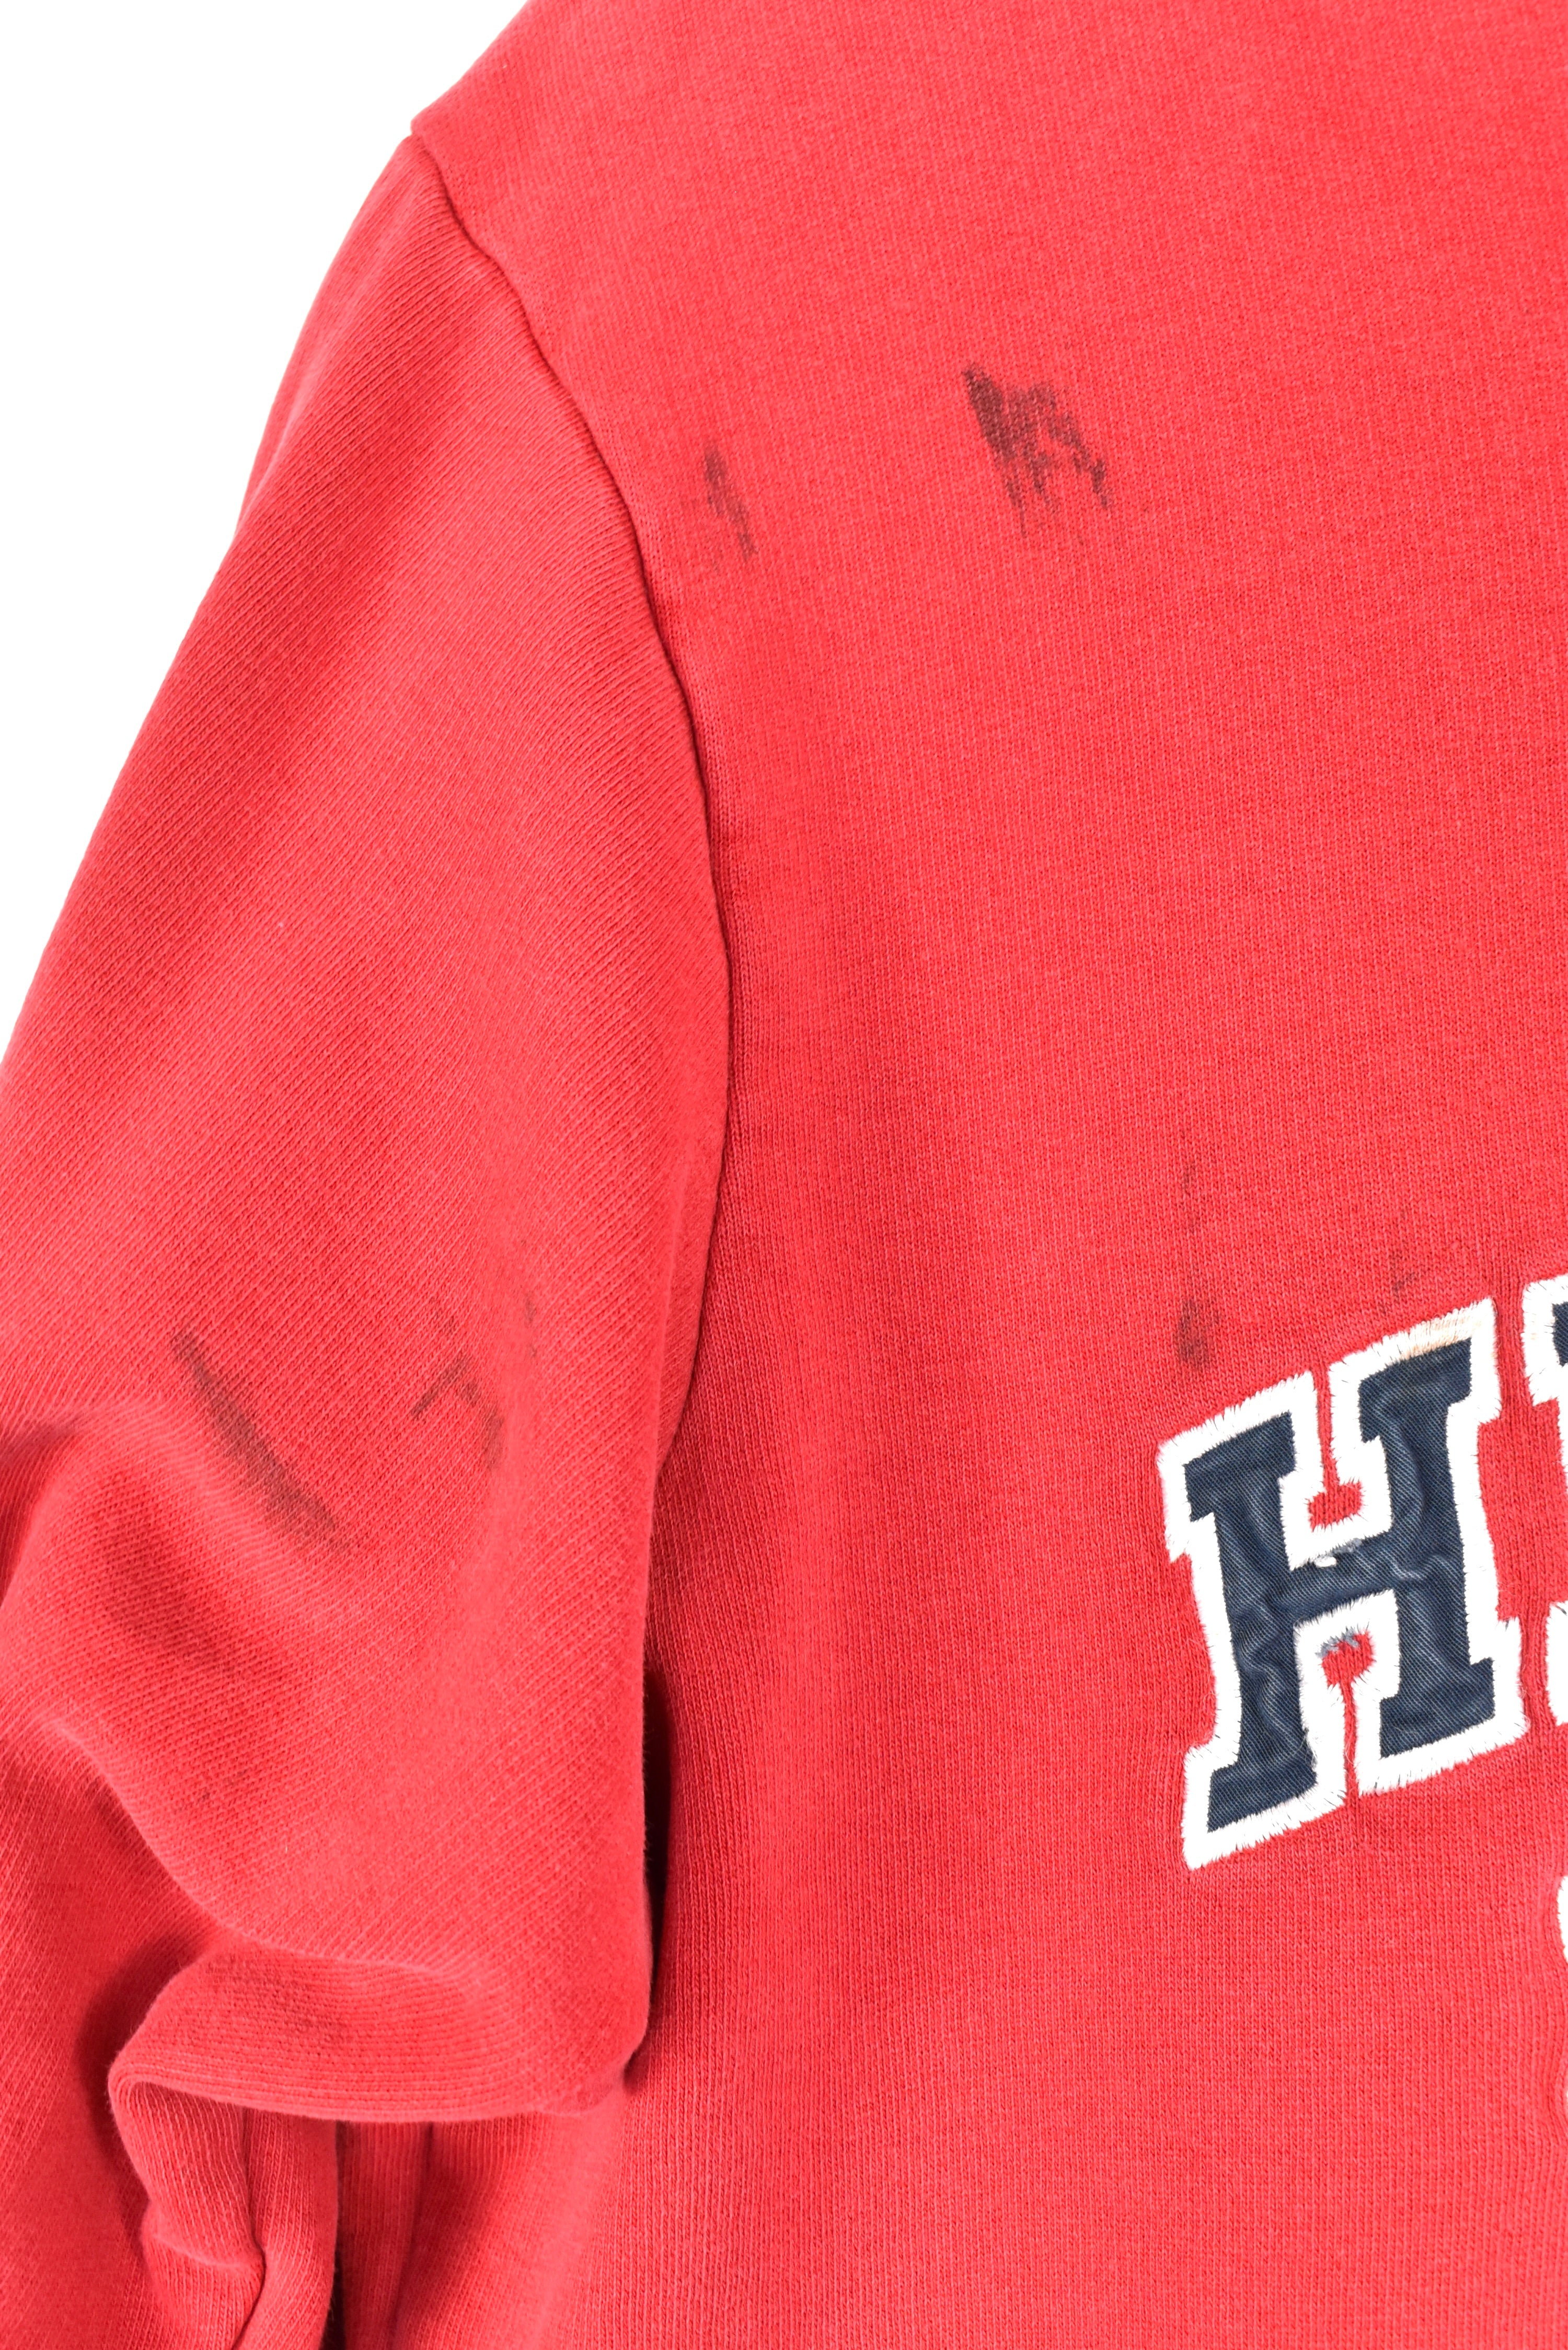 Vintage Tommy Hilfiger sweatshirt, red embroidered crewneck - AU Large TOMMY HILFIGER